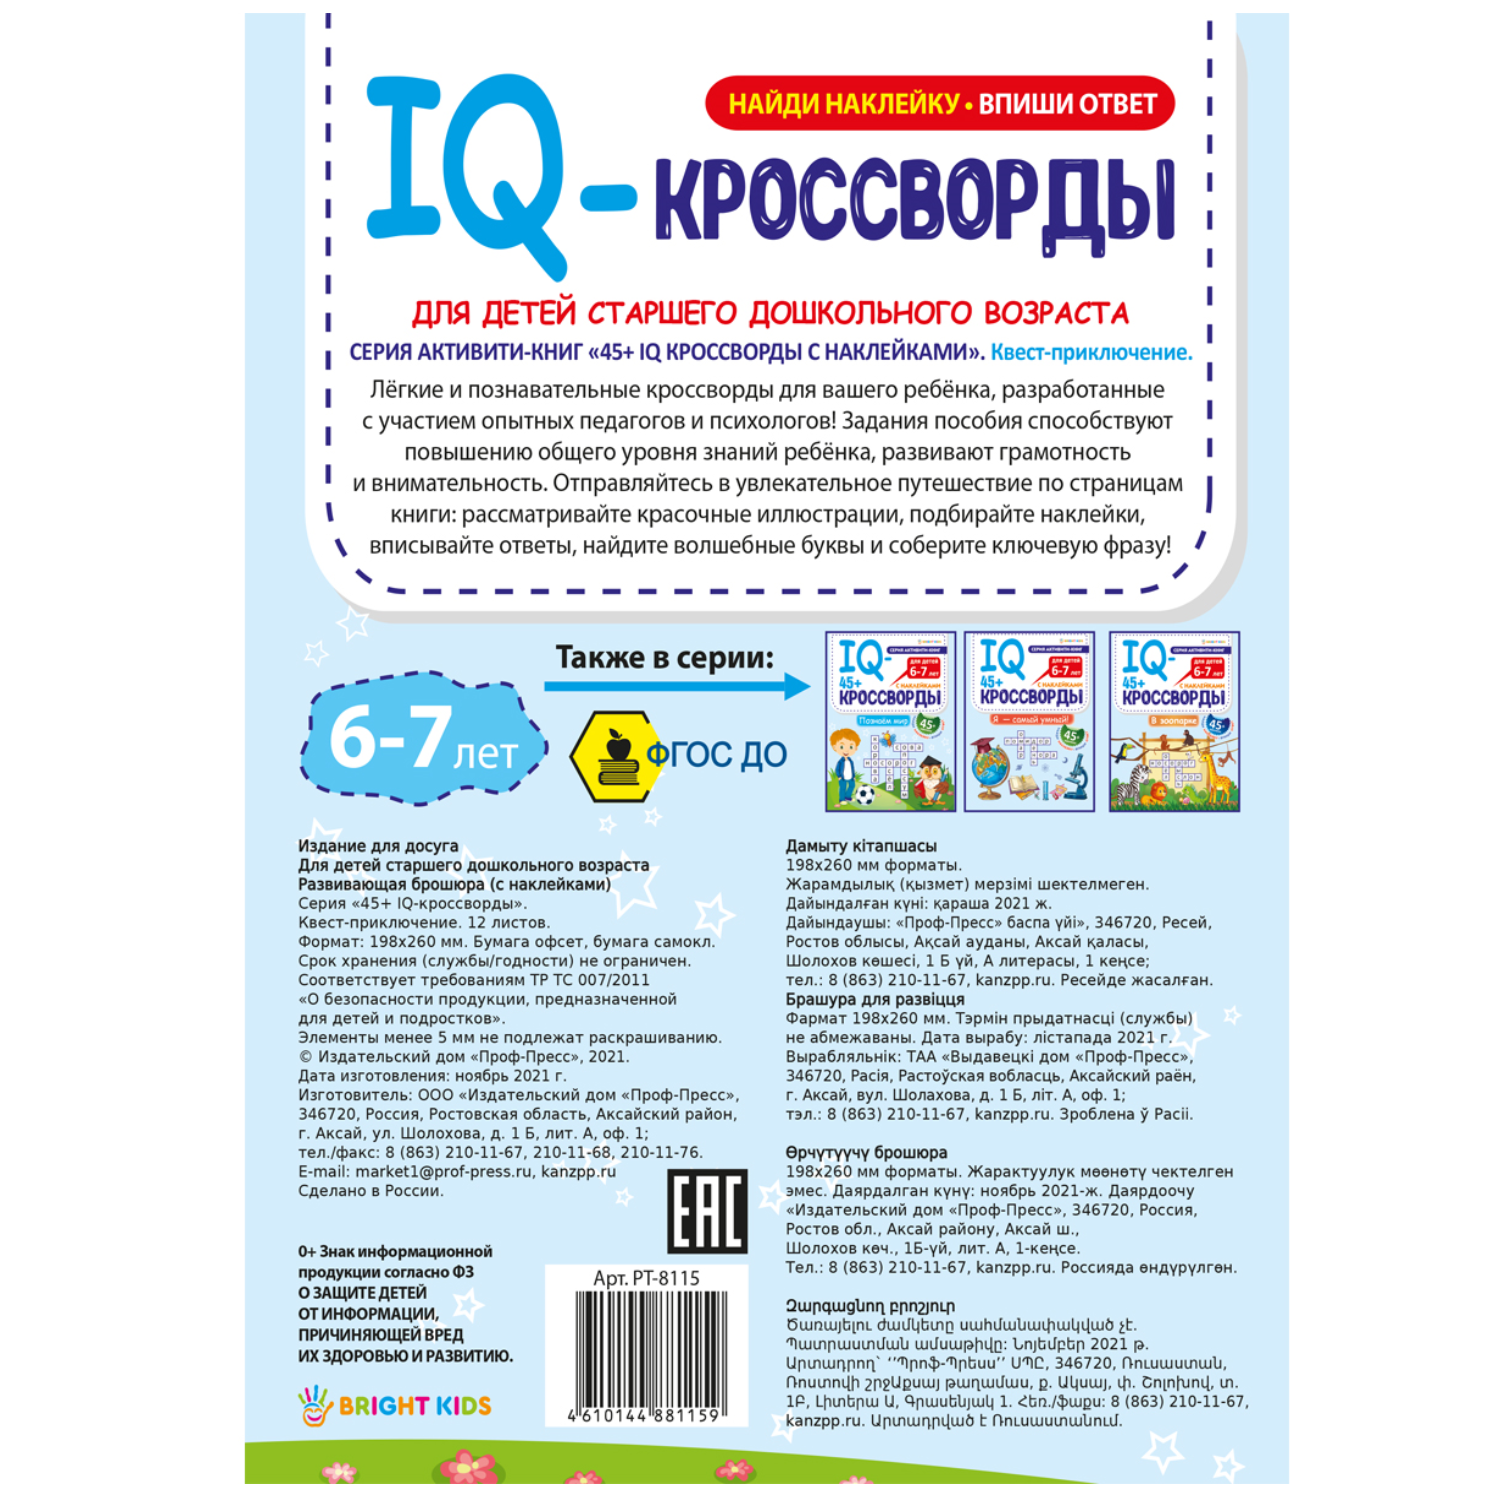 IQ-кроссворды Bright Kids Квест-приключение А4 12 листов + 2 листа с наклейками - фото 5